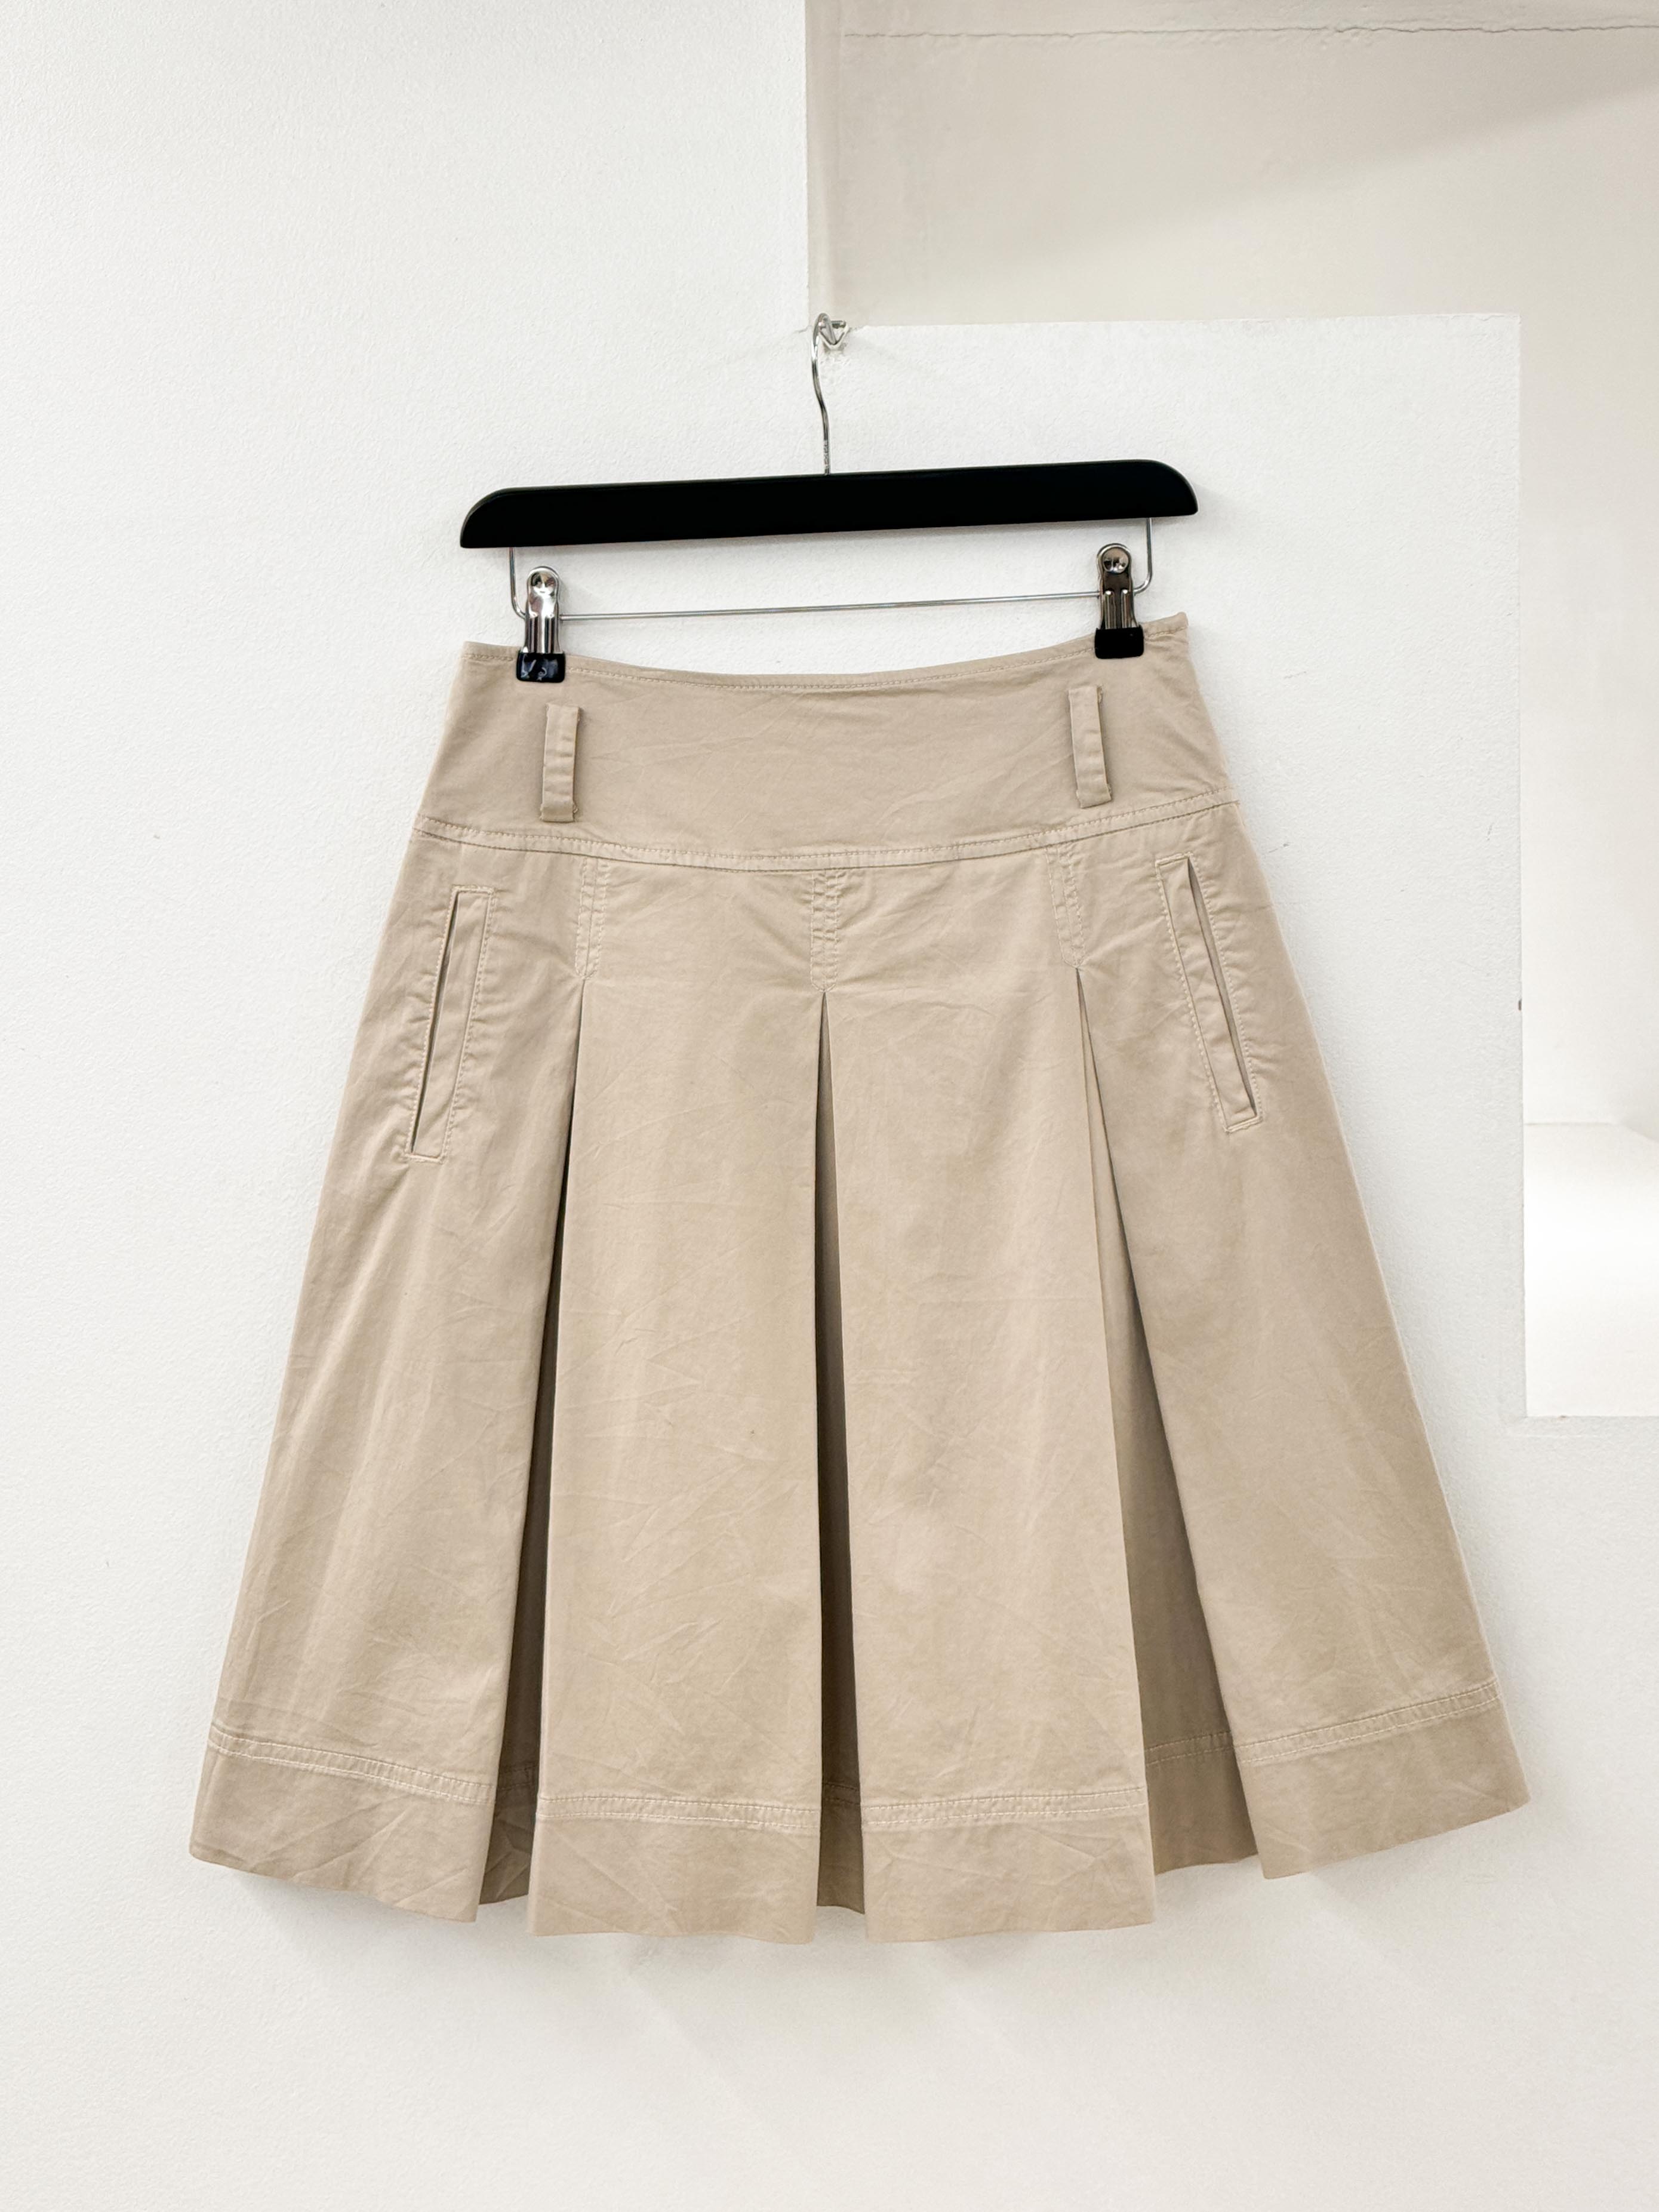 Max Mara pleats skirt 28 inch